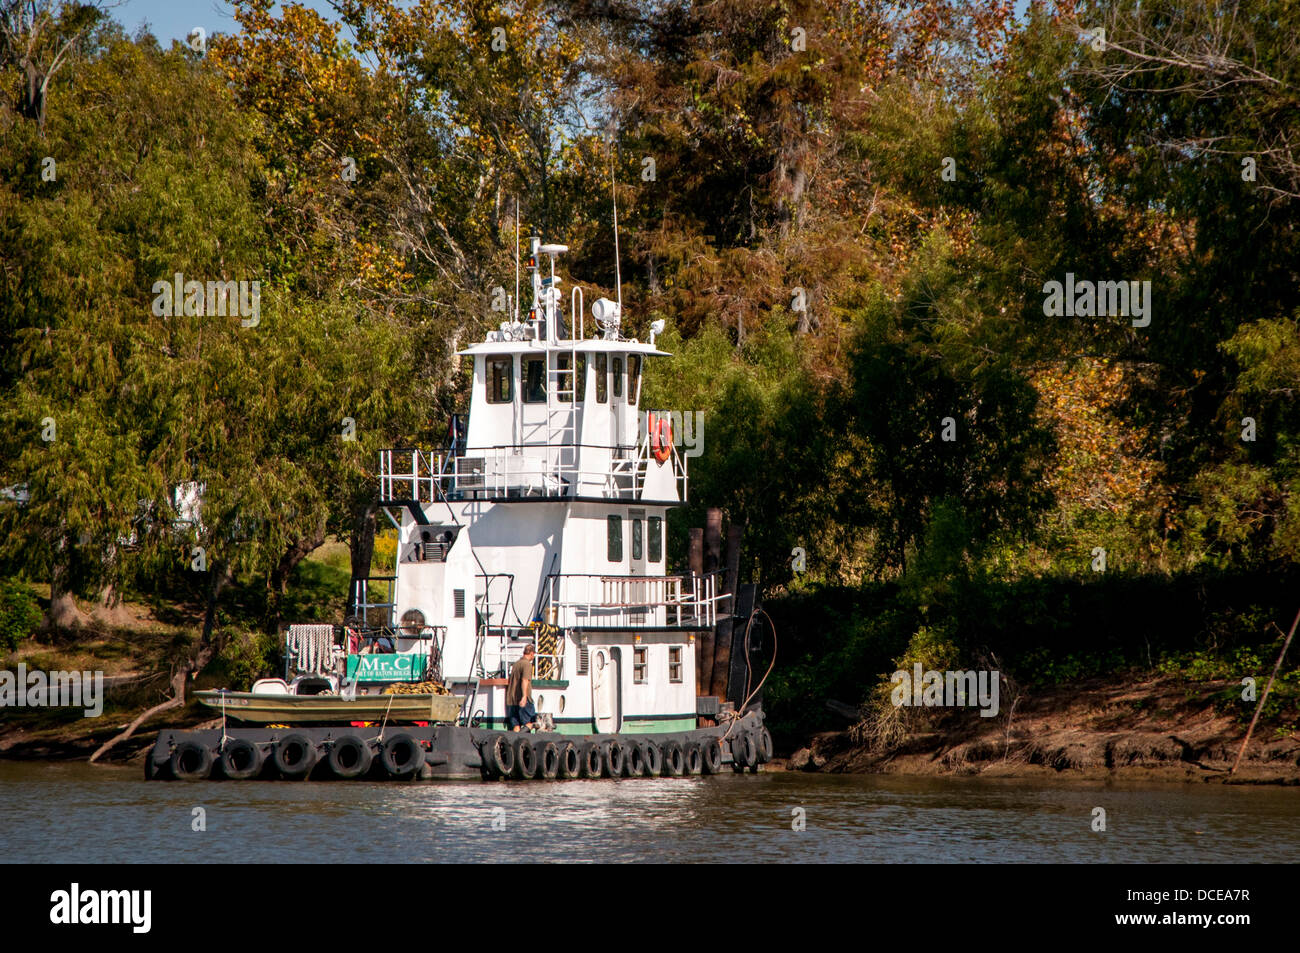 USA, Louisiane, bassin Atchafalaya, remorqueur de 'Mr. C' de Baton Rouge attaché sur un bayou. Banque D'Images